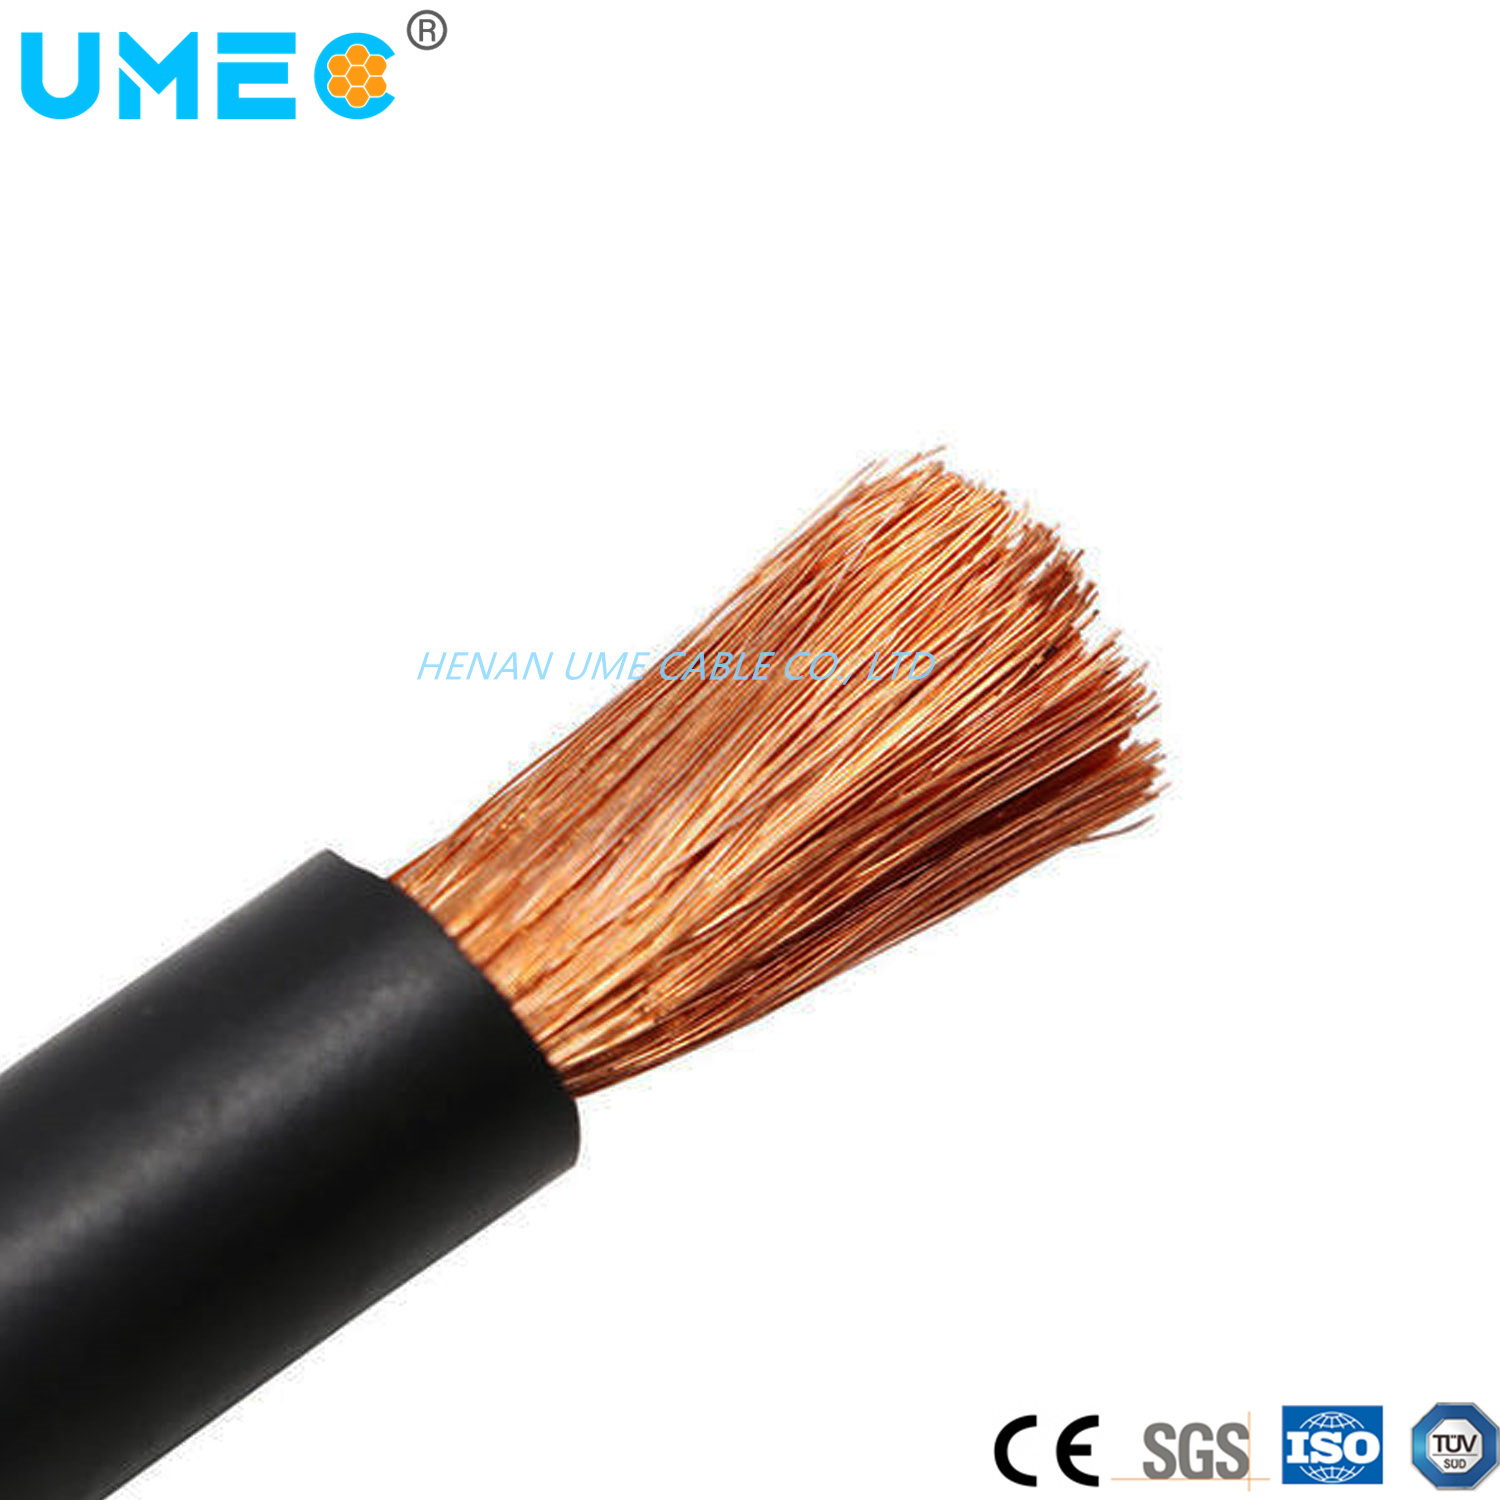 
                Ventes directes en usine 10-120mm2/Caoutchouc flexible en PVC de couleur/Câble de soudage en silicone isolé Câble électrique
            